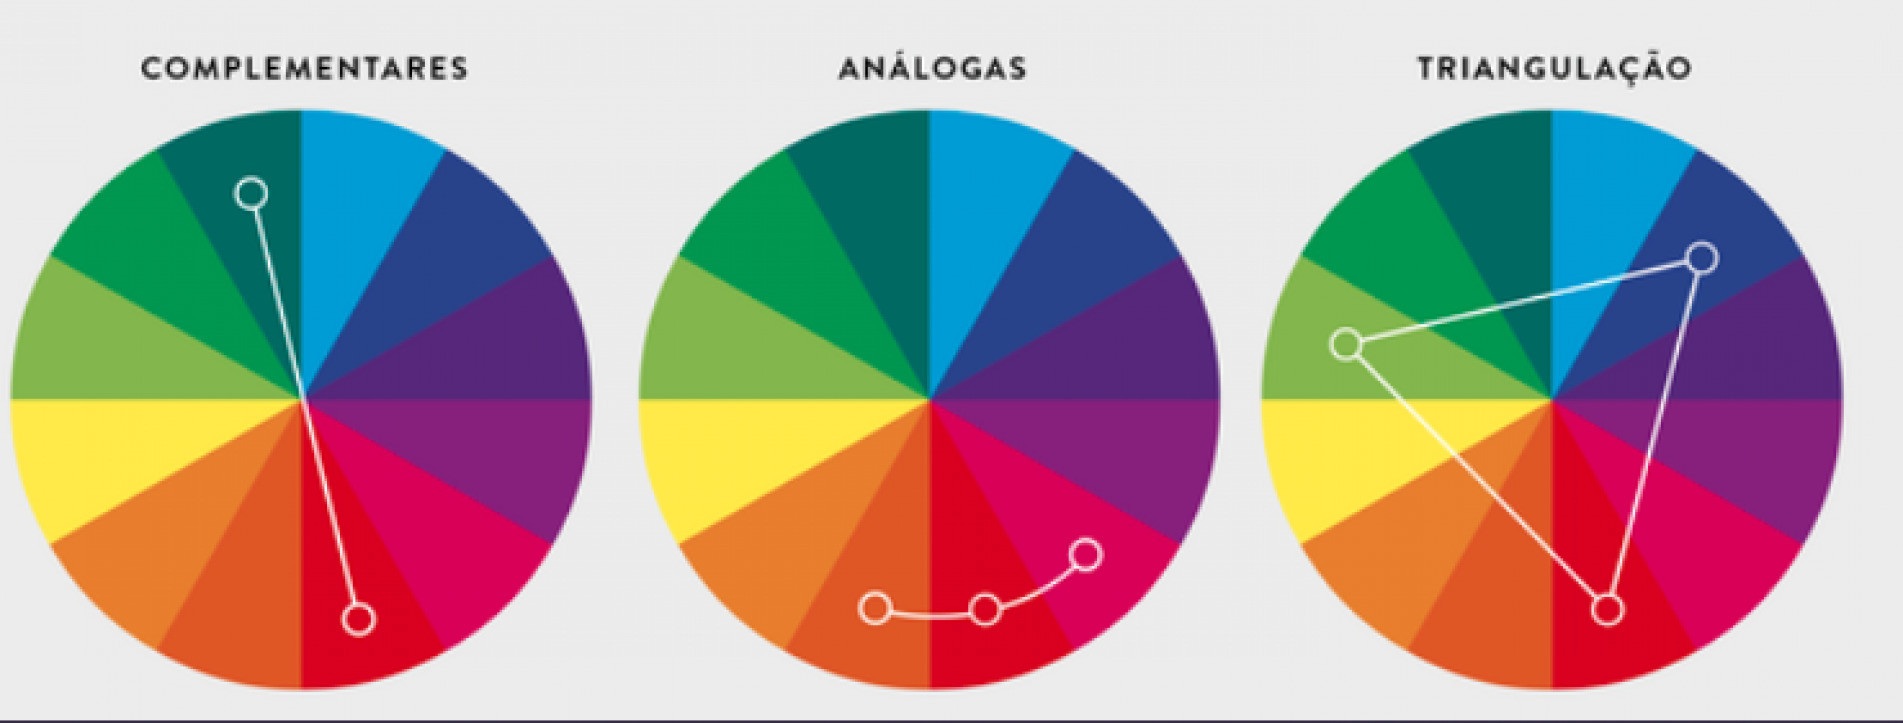 10 combinação de cores correspondentes que funcionam muito bem juntas